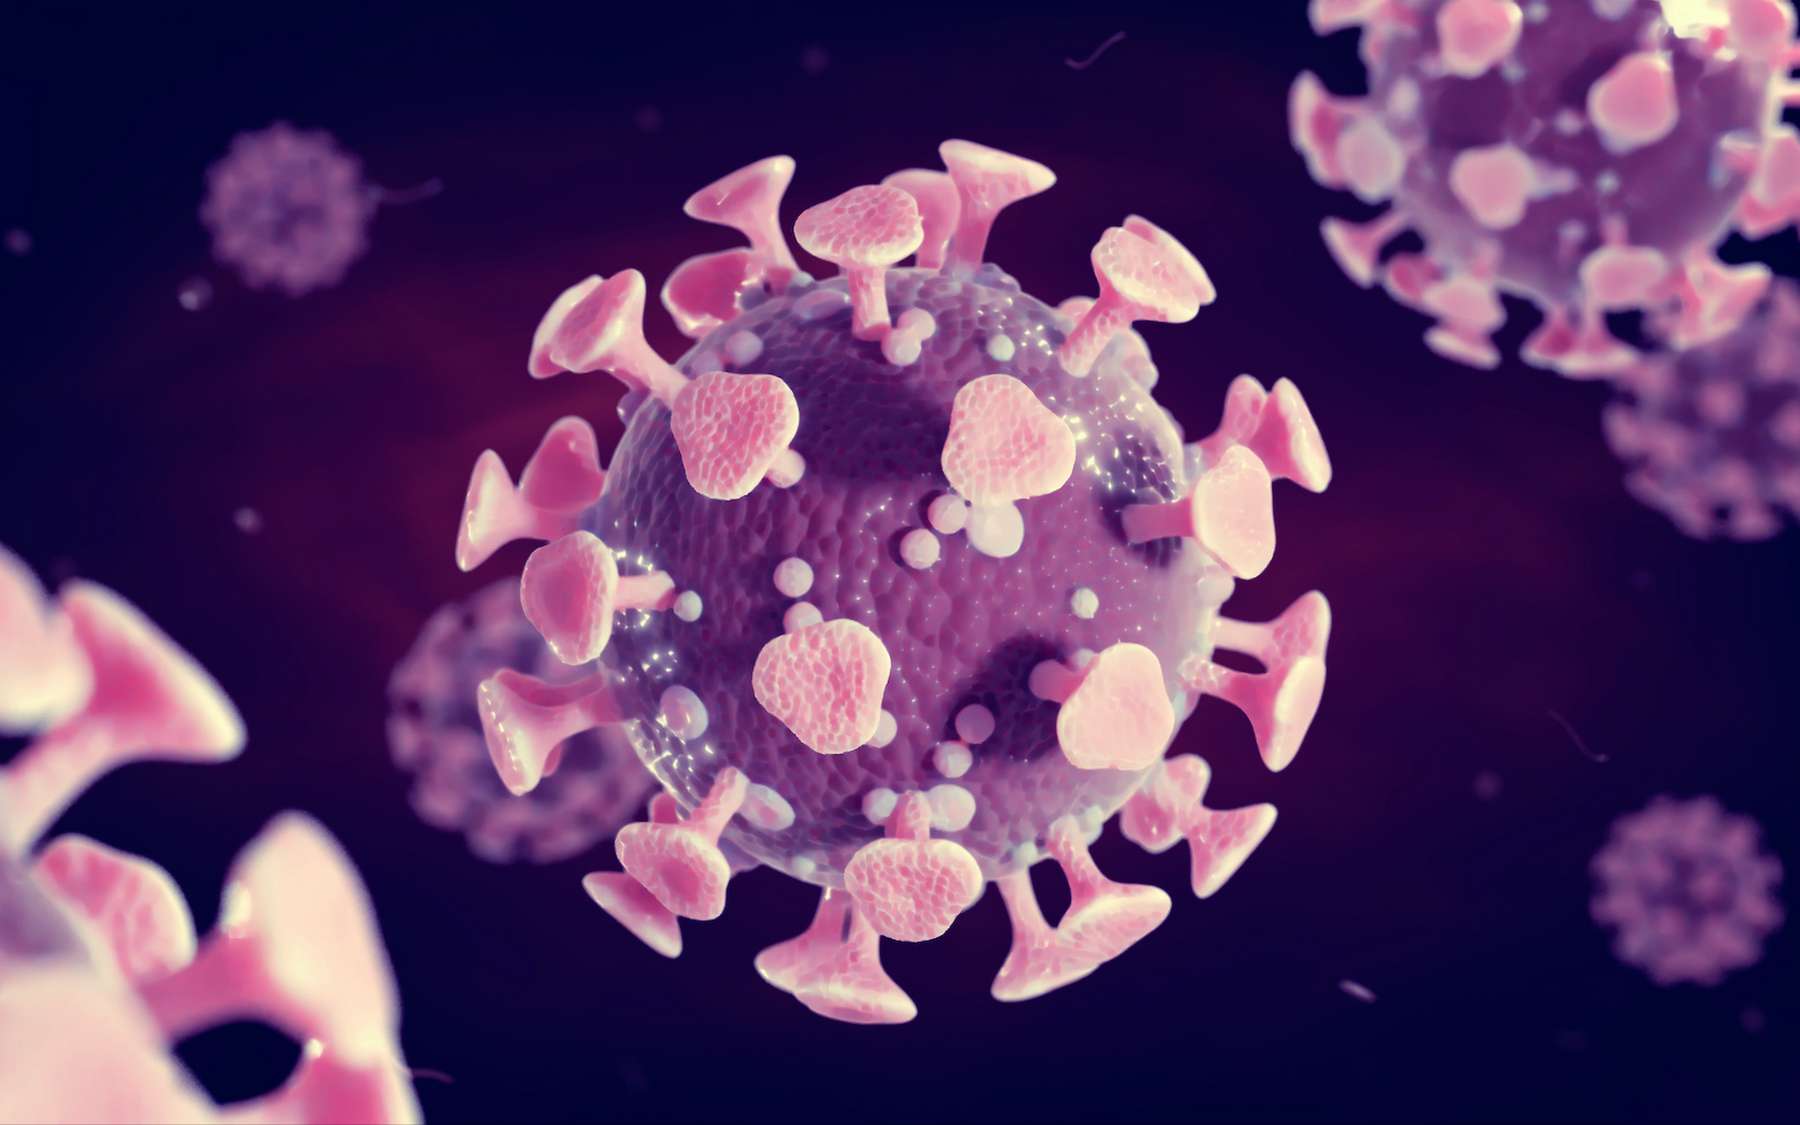 Une personne infectée a plusieurs milliards de particules virales dans l'organisme. © dottedyeti, Adobe Stock